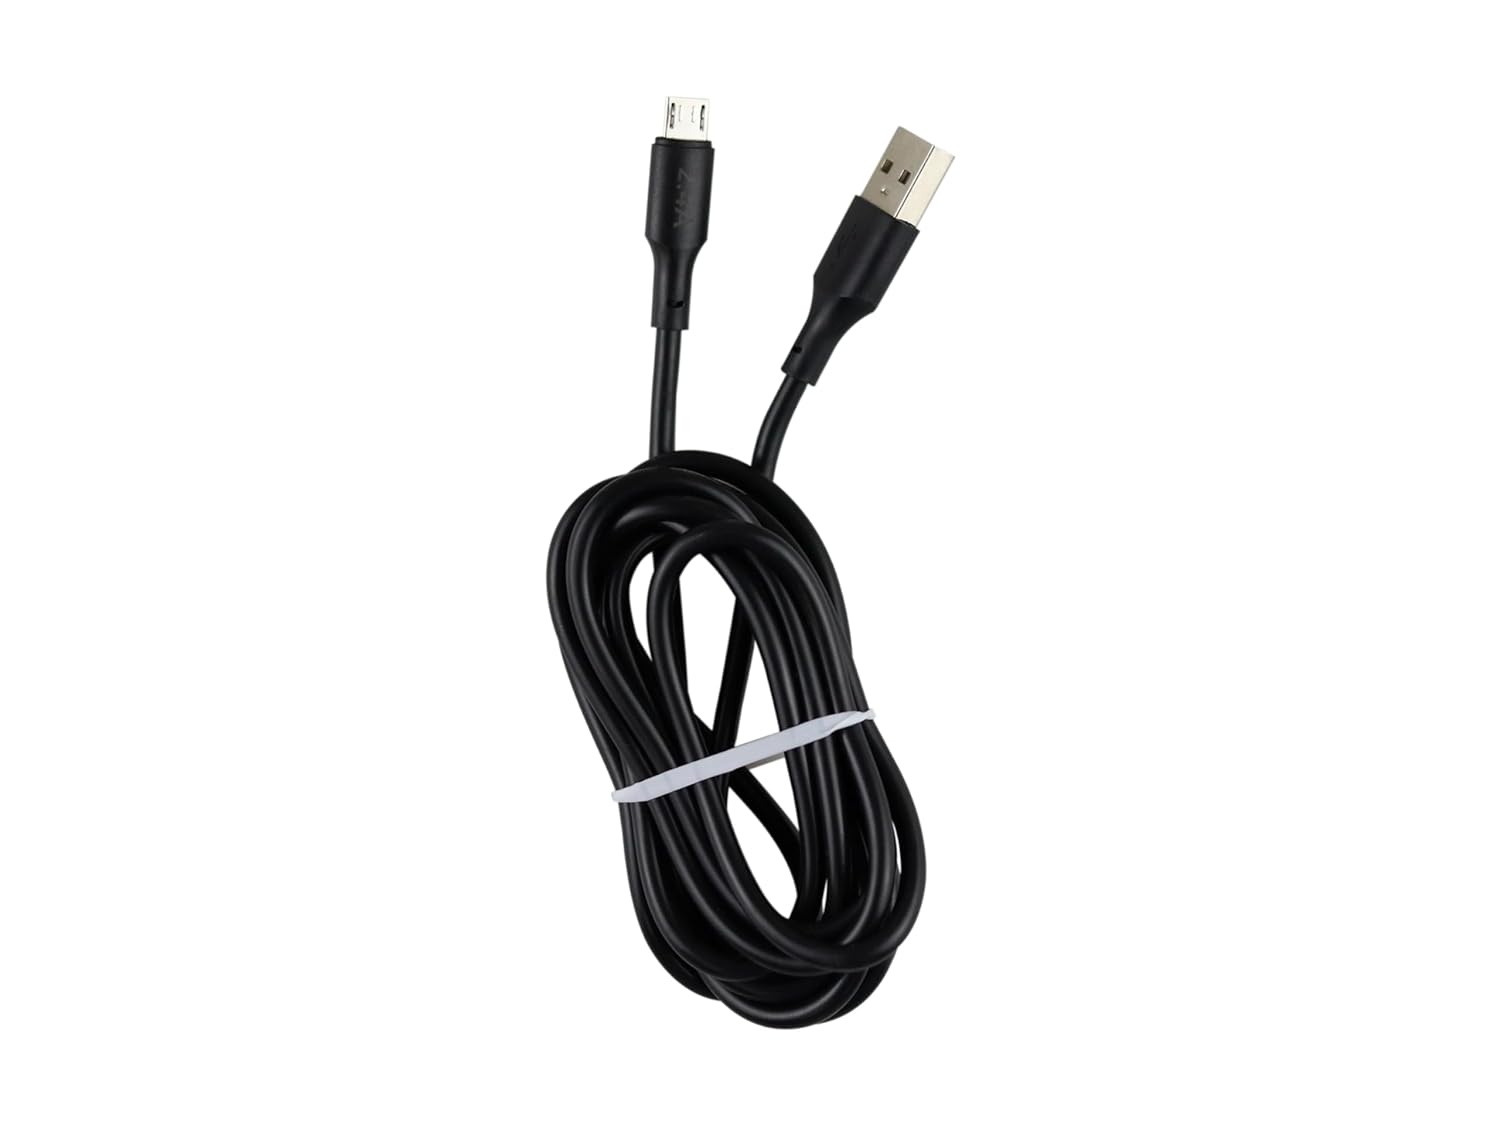 Cable Tipo V8 Micro USB, Moreka CB-035, 2.4 1 M.